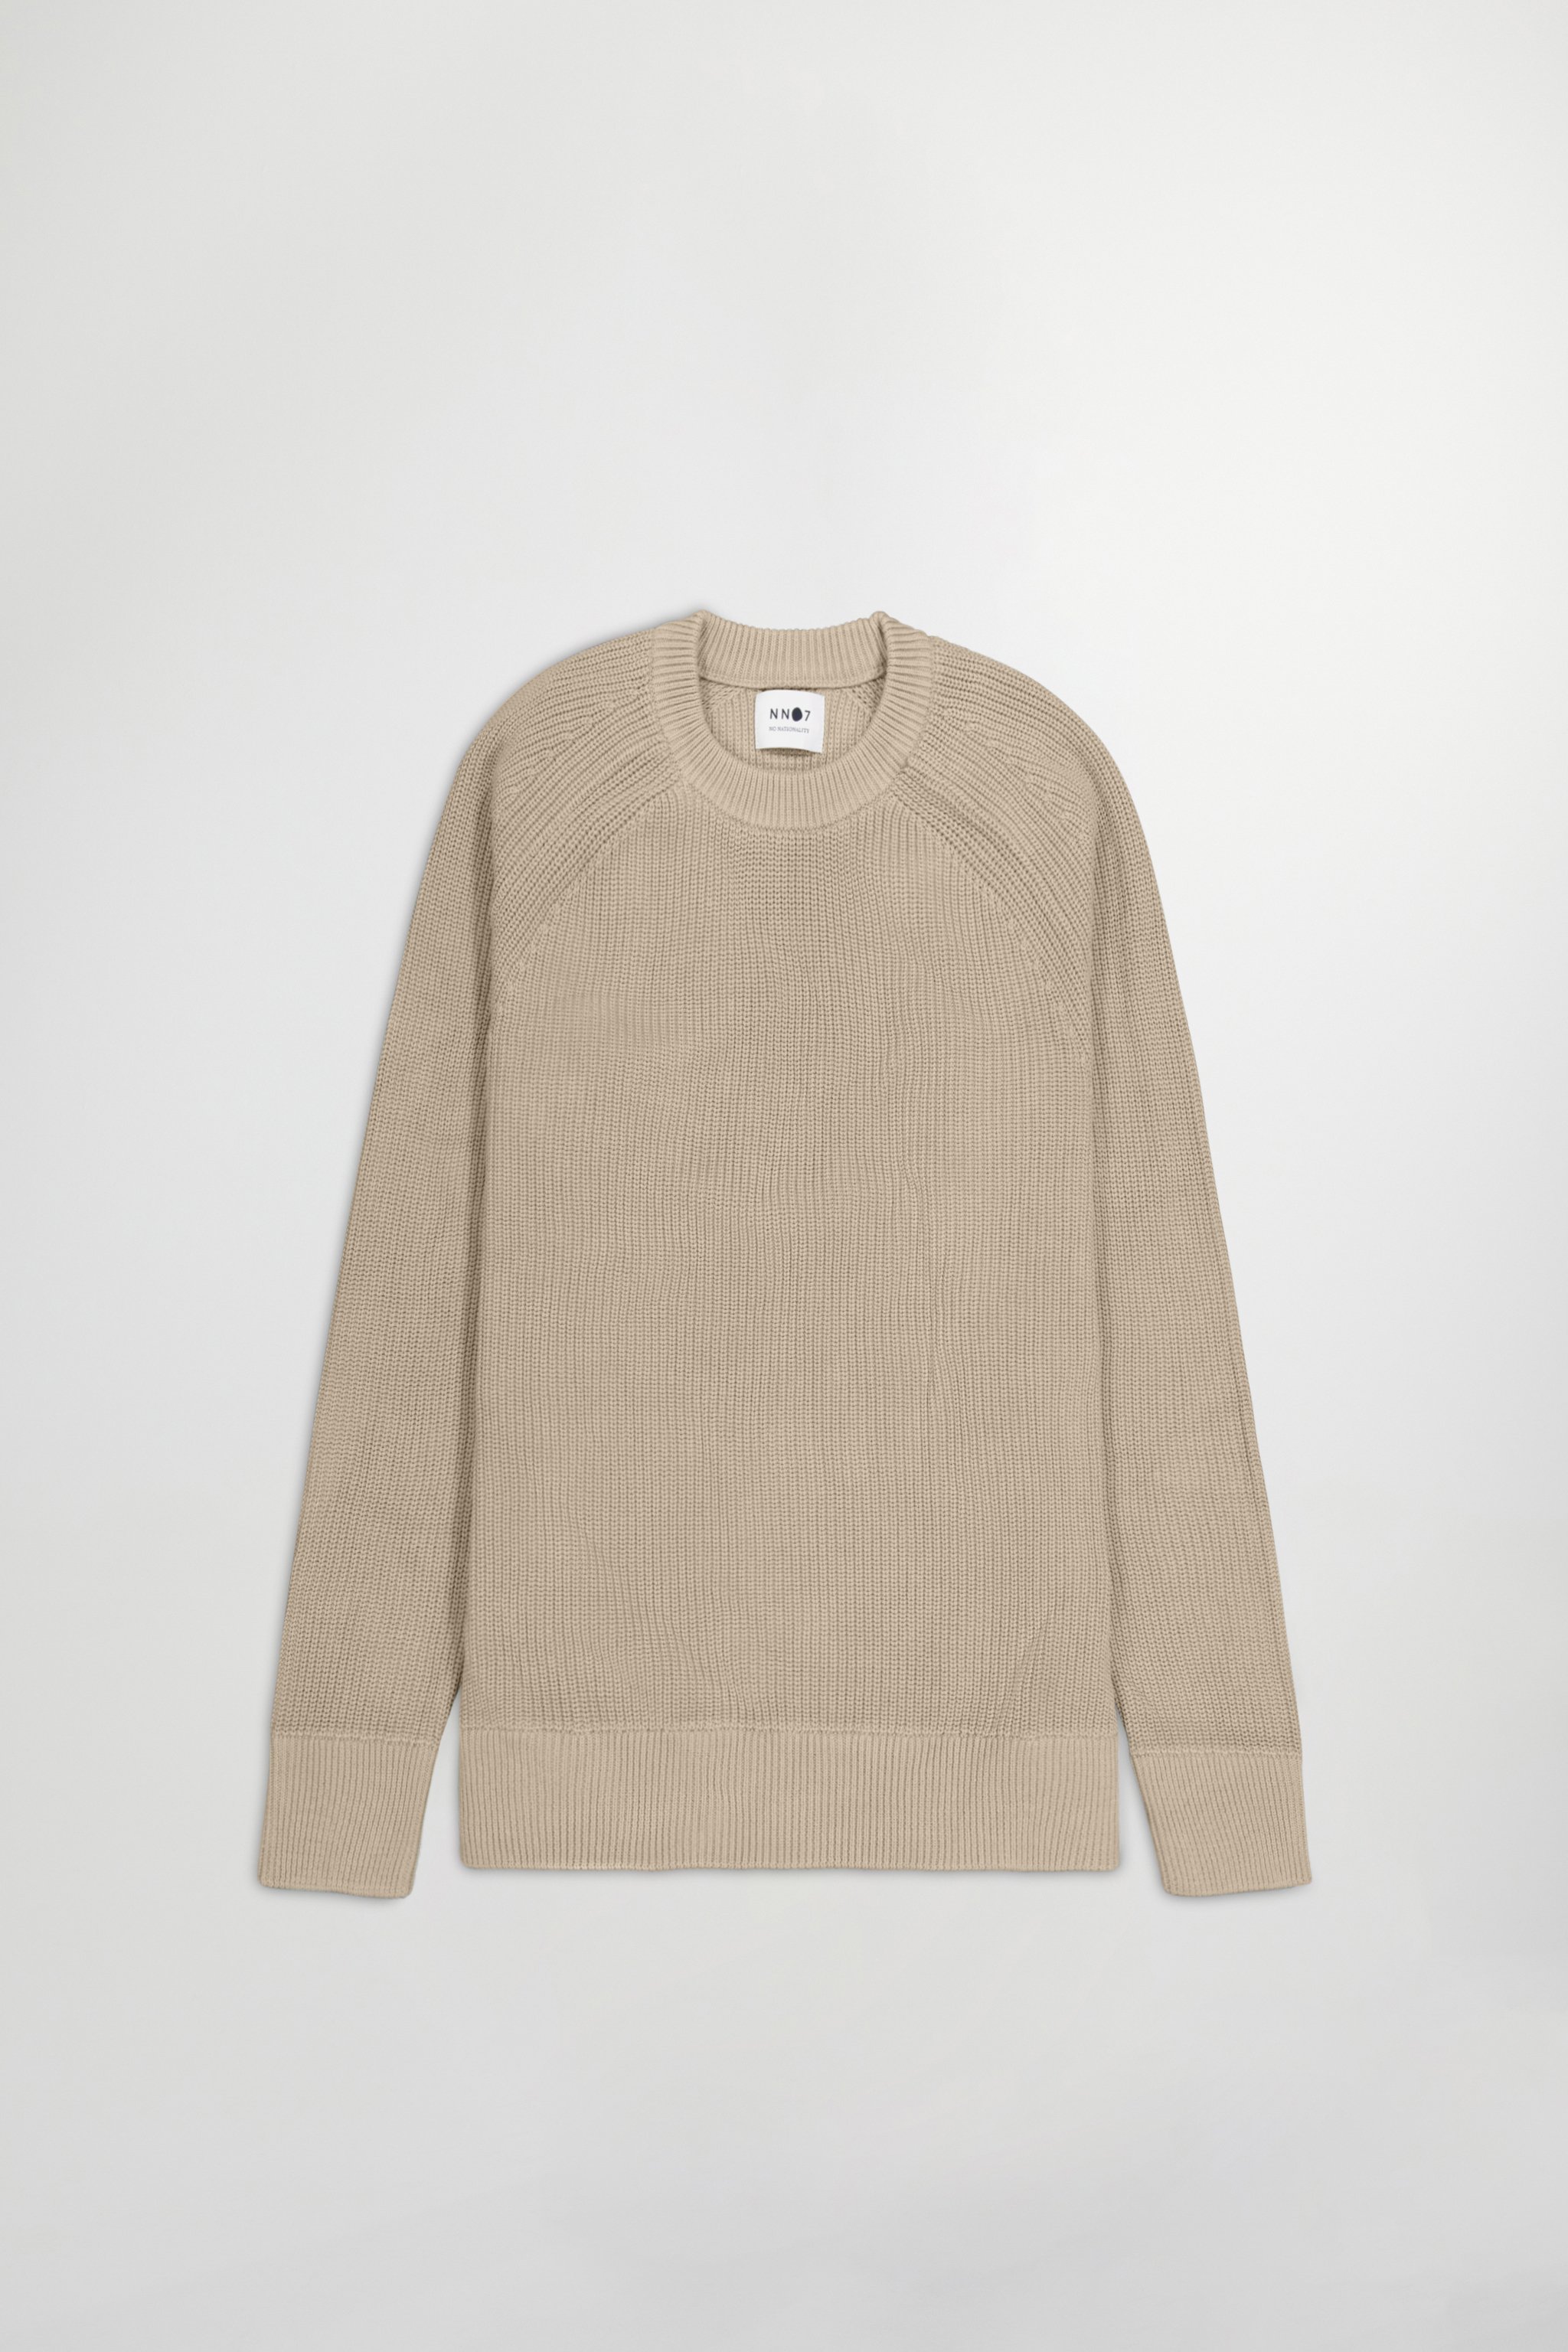 Jacobo 6470 men's sweater - White - Buy online at NN.07®